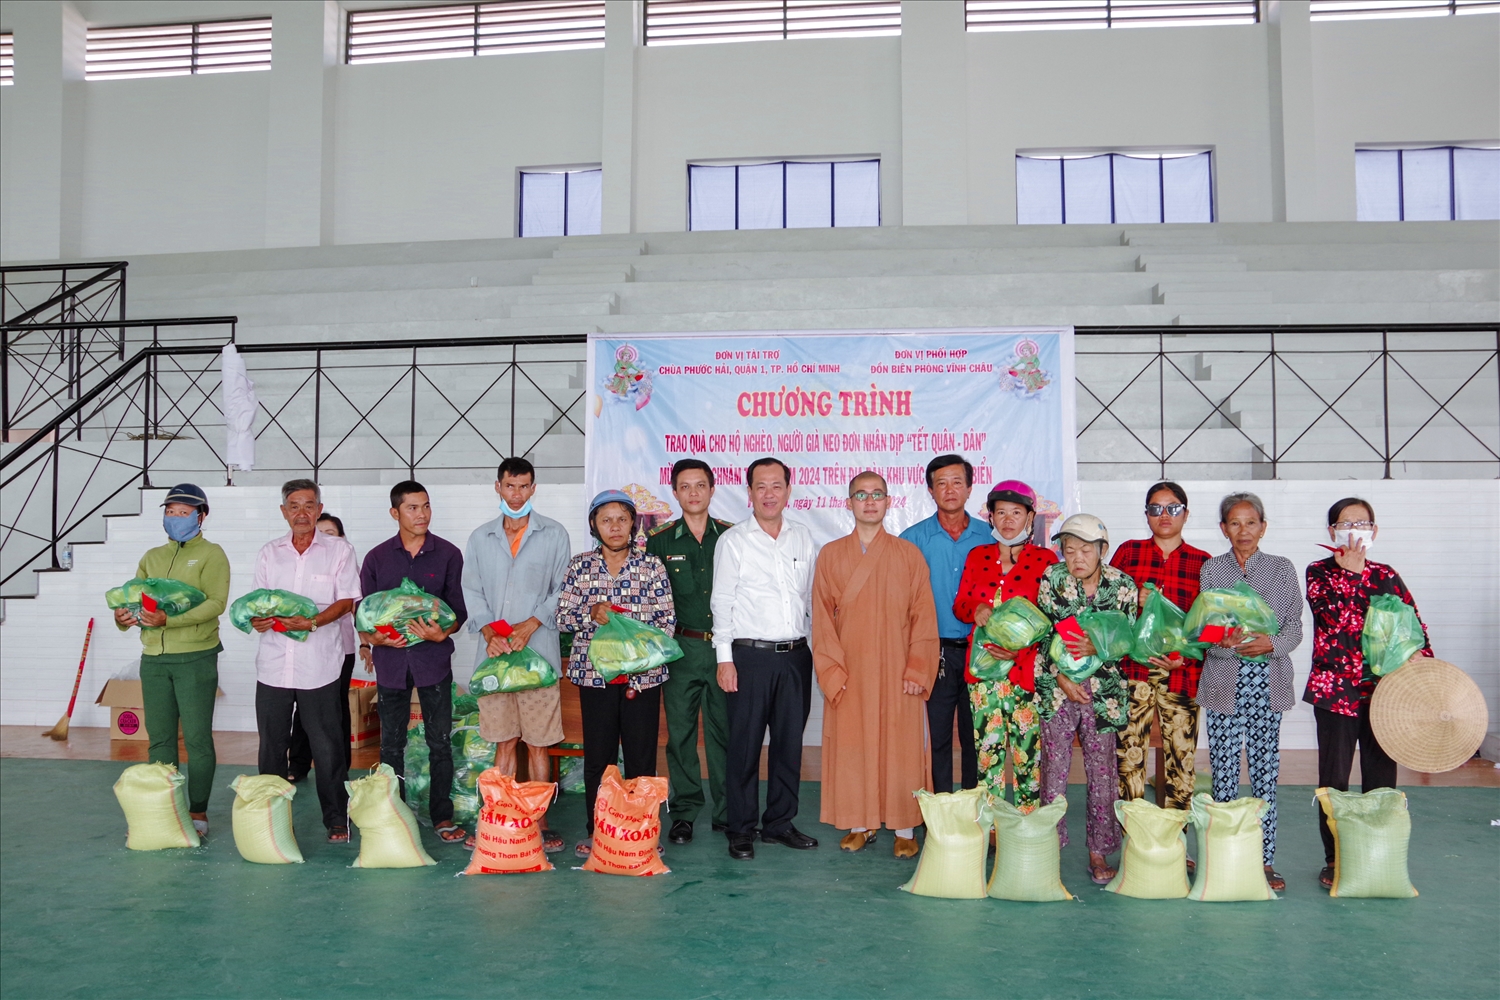 Đại diện lãnh đạo UBND thị xã Vĩnh Châu, đồn Biên phòng Vĩnh Châu tặng quà đến các hộ dân tộc Khmer khu vực biên giới (Thị xã Vĩnh Châu, Sóc Trăng) Ảnh: Văn Long